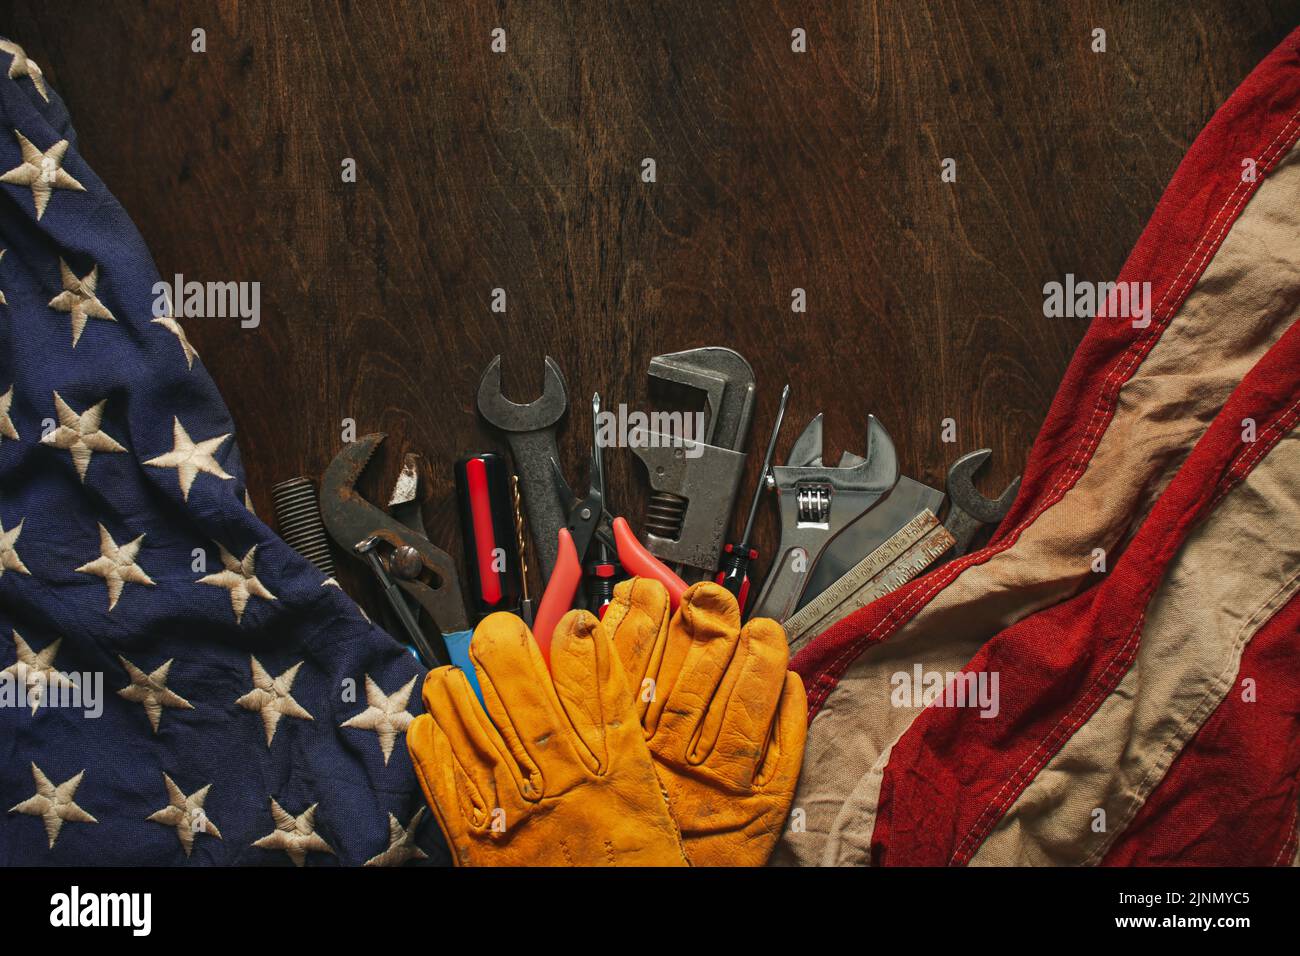 Usar guantes de trabajo en las herramientas con bandera estadounidense. Hecho en EE.UU., fuerza laboral americana, trabajador de cuello azul, o concepto del Día del Trabajo. Foto de stock